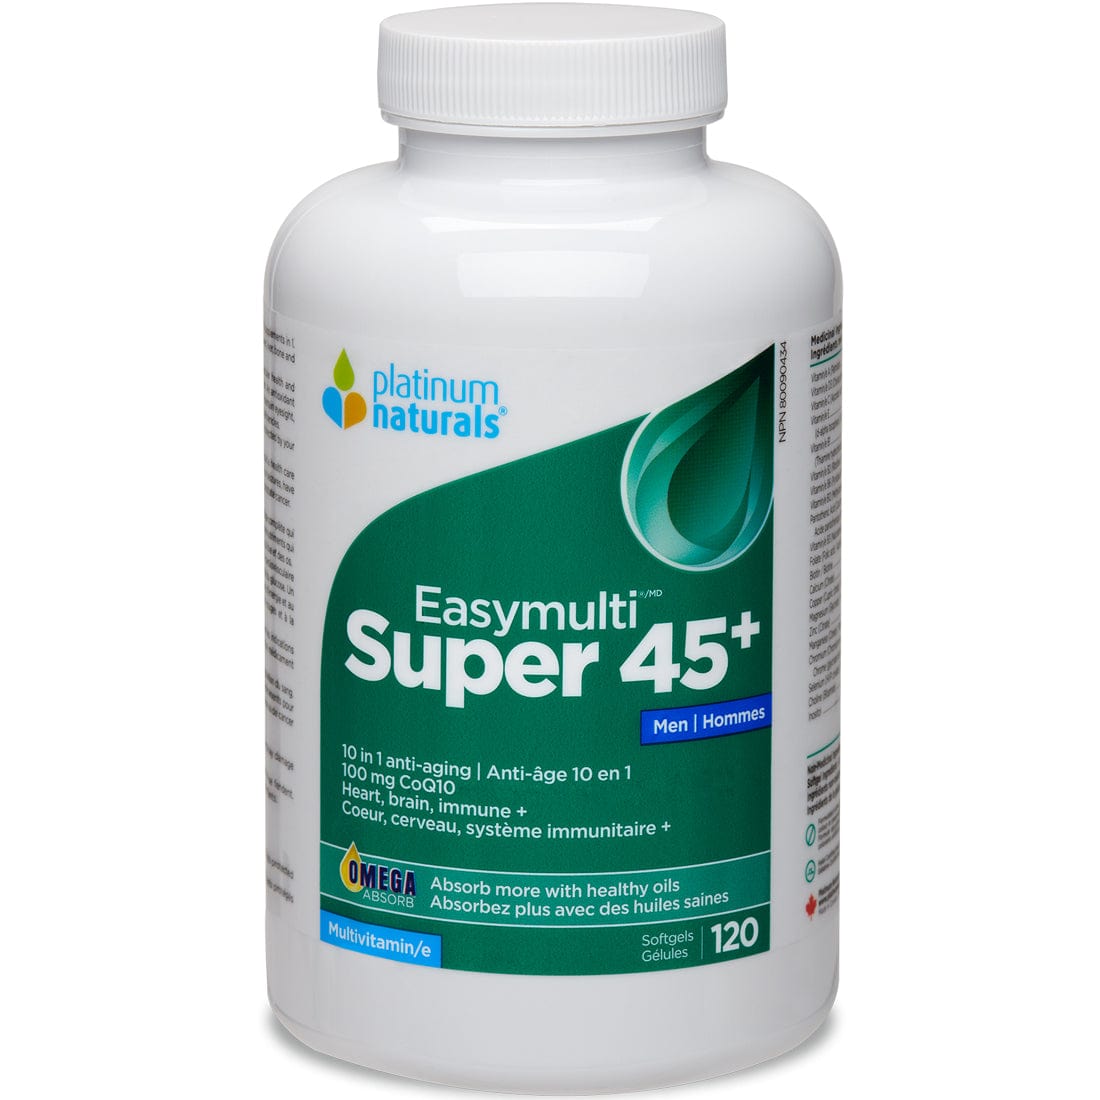 Platinum Naturals Multivitamin Super EasyMulti 45+ for Men